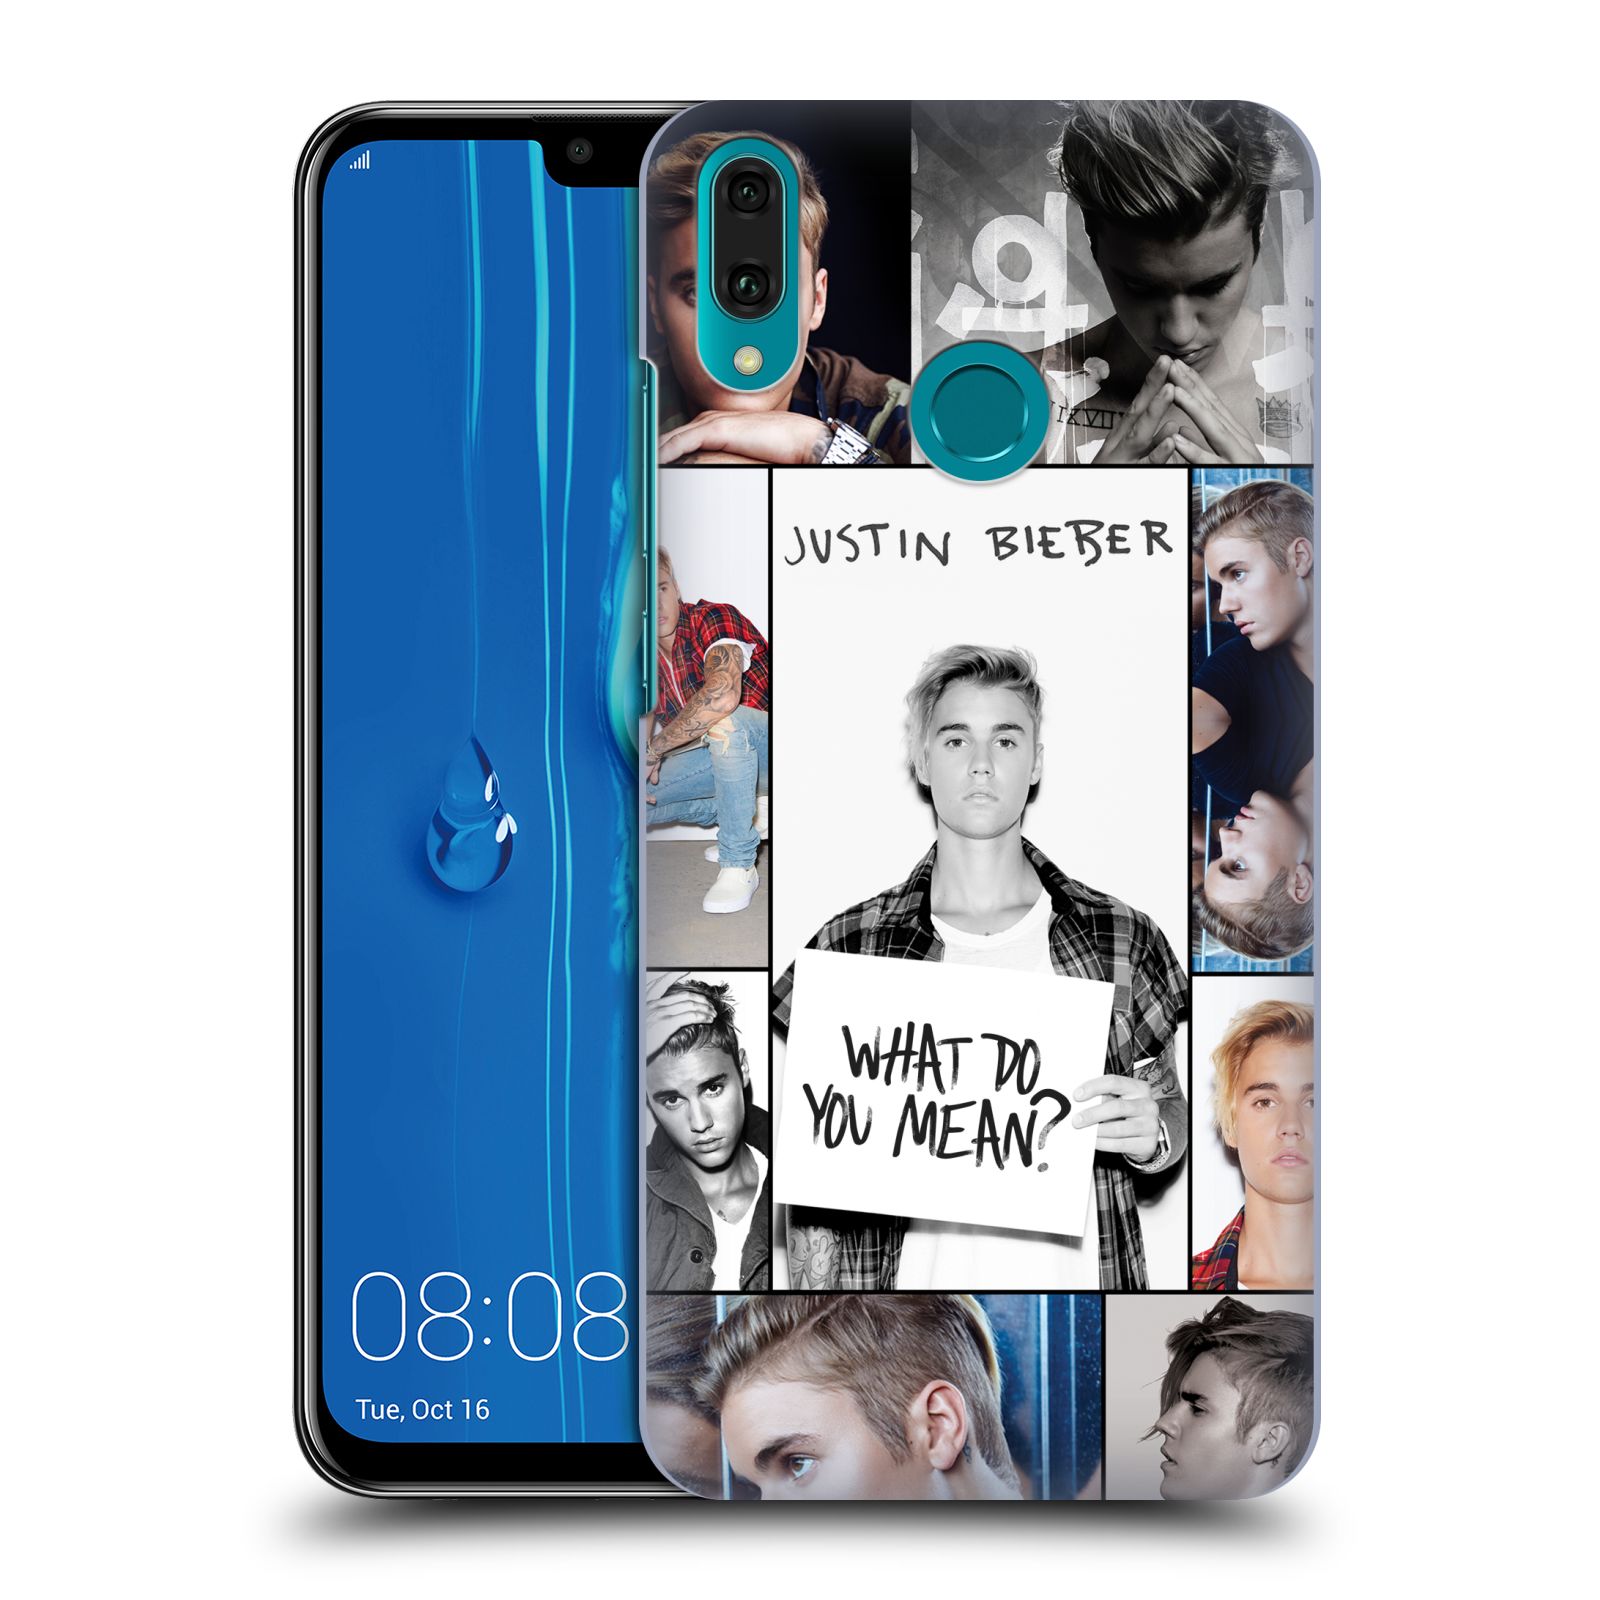 Pouzdro na mobil Huawei Y9 2019 - HEAD CASE - Justin Bieber foto Purpose malé fotky